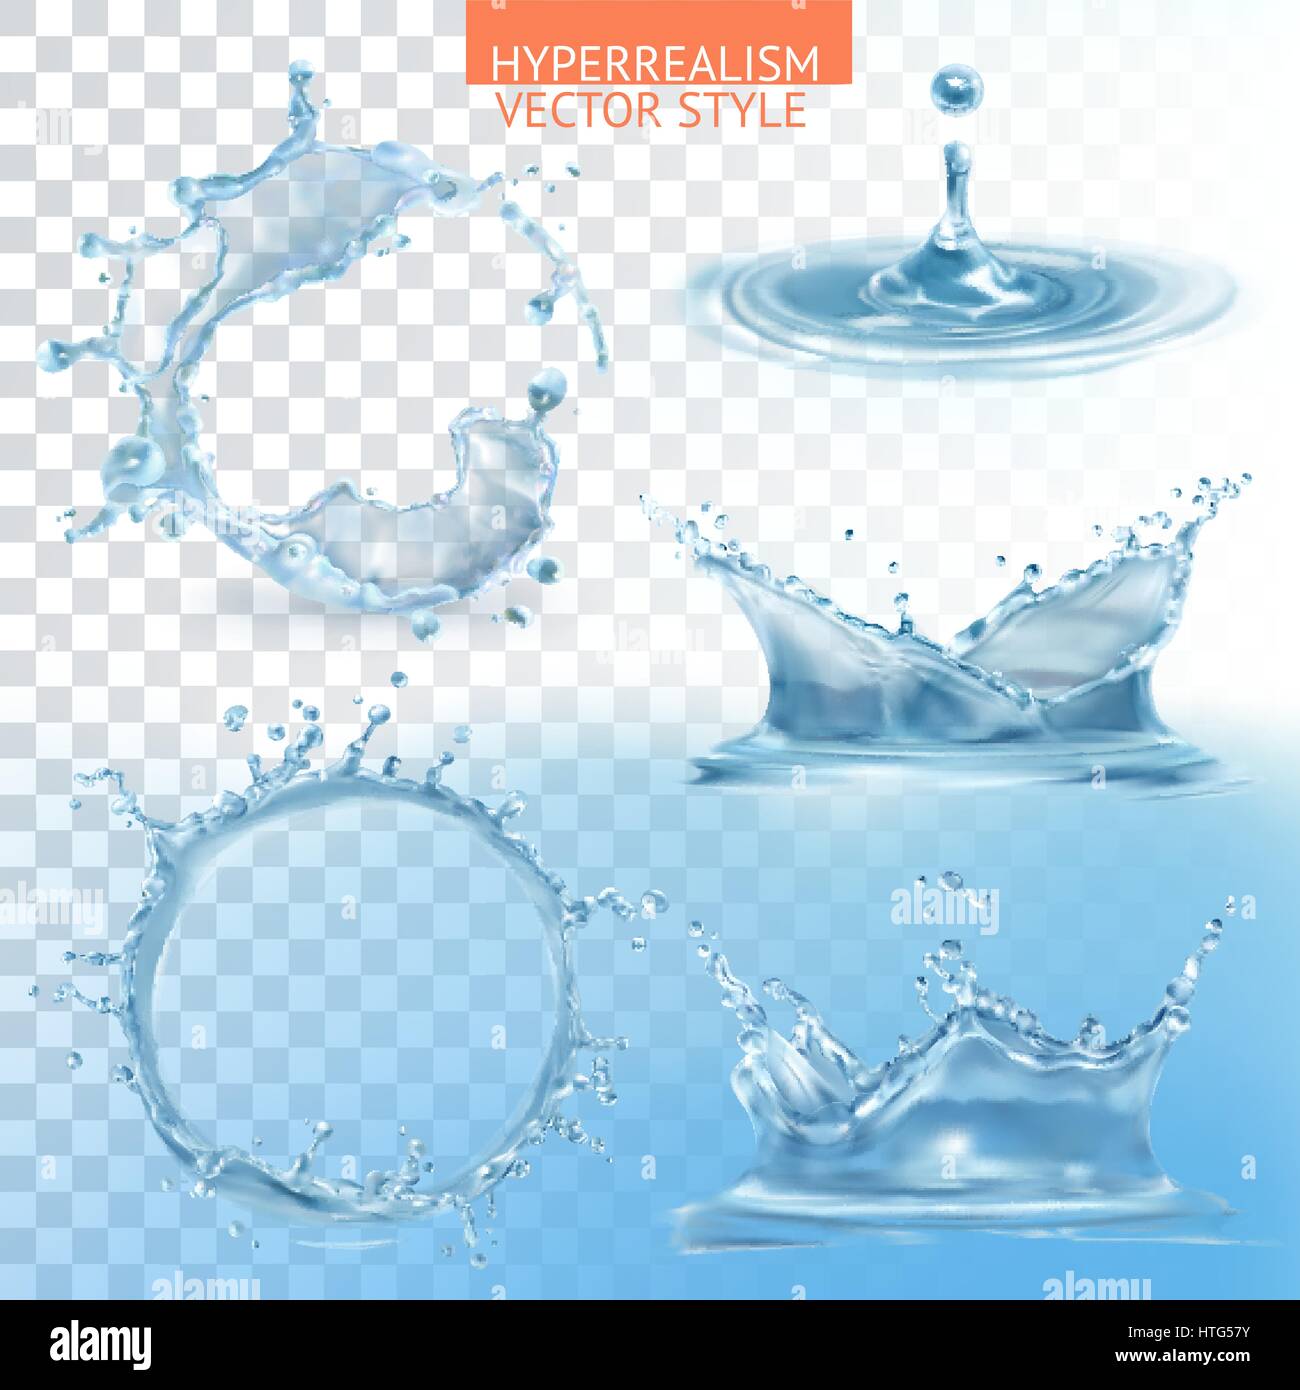 Wasser spritzt mit Transparenz-Vektor-set Stock Vektor